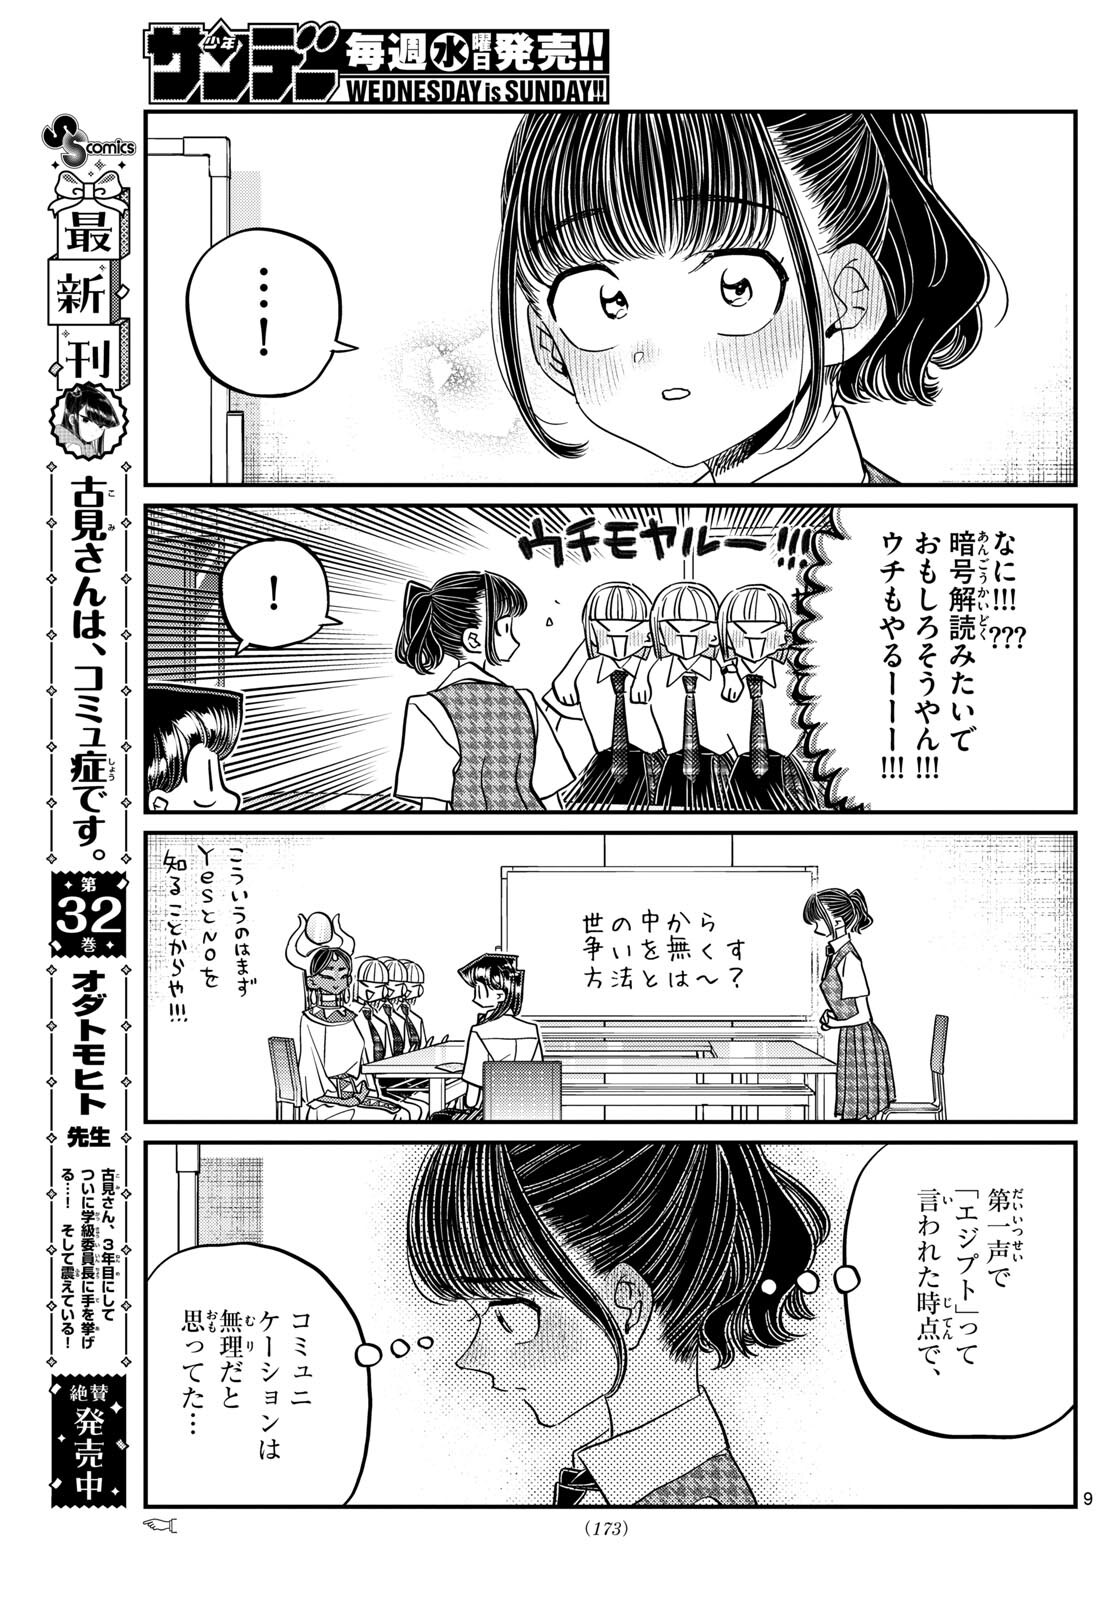 Komi-san wa Komyushou Desu - Chapter 441 - Page 9